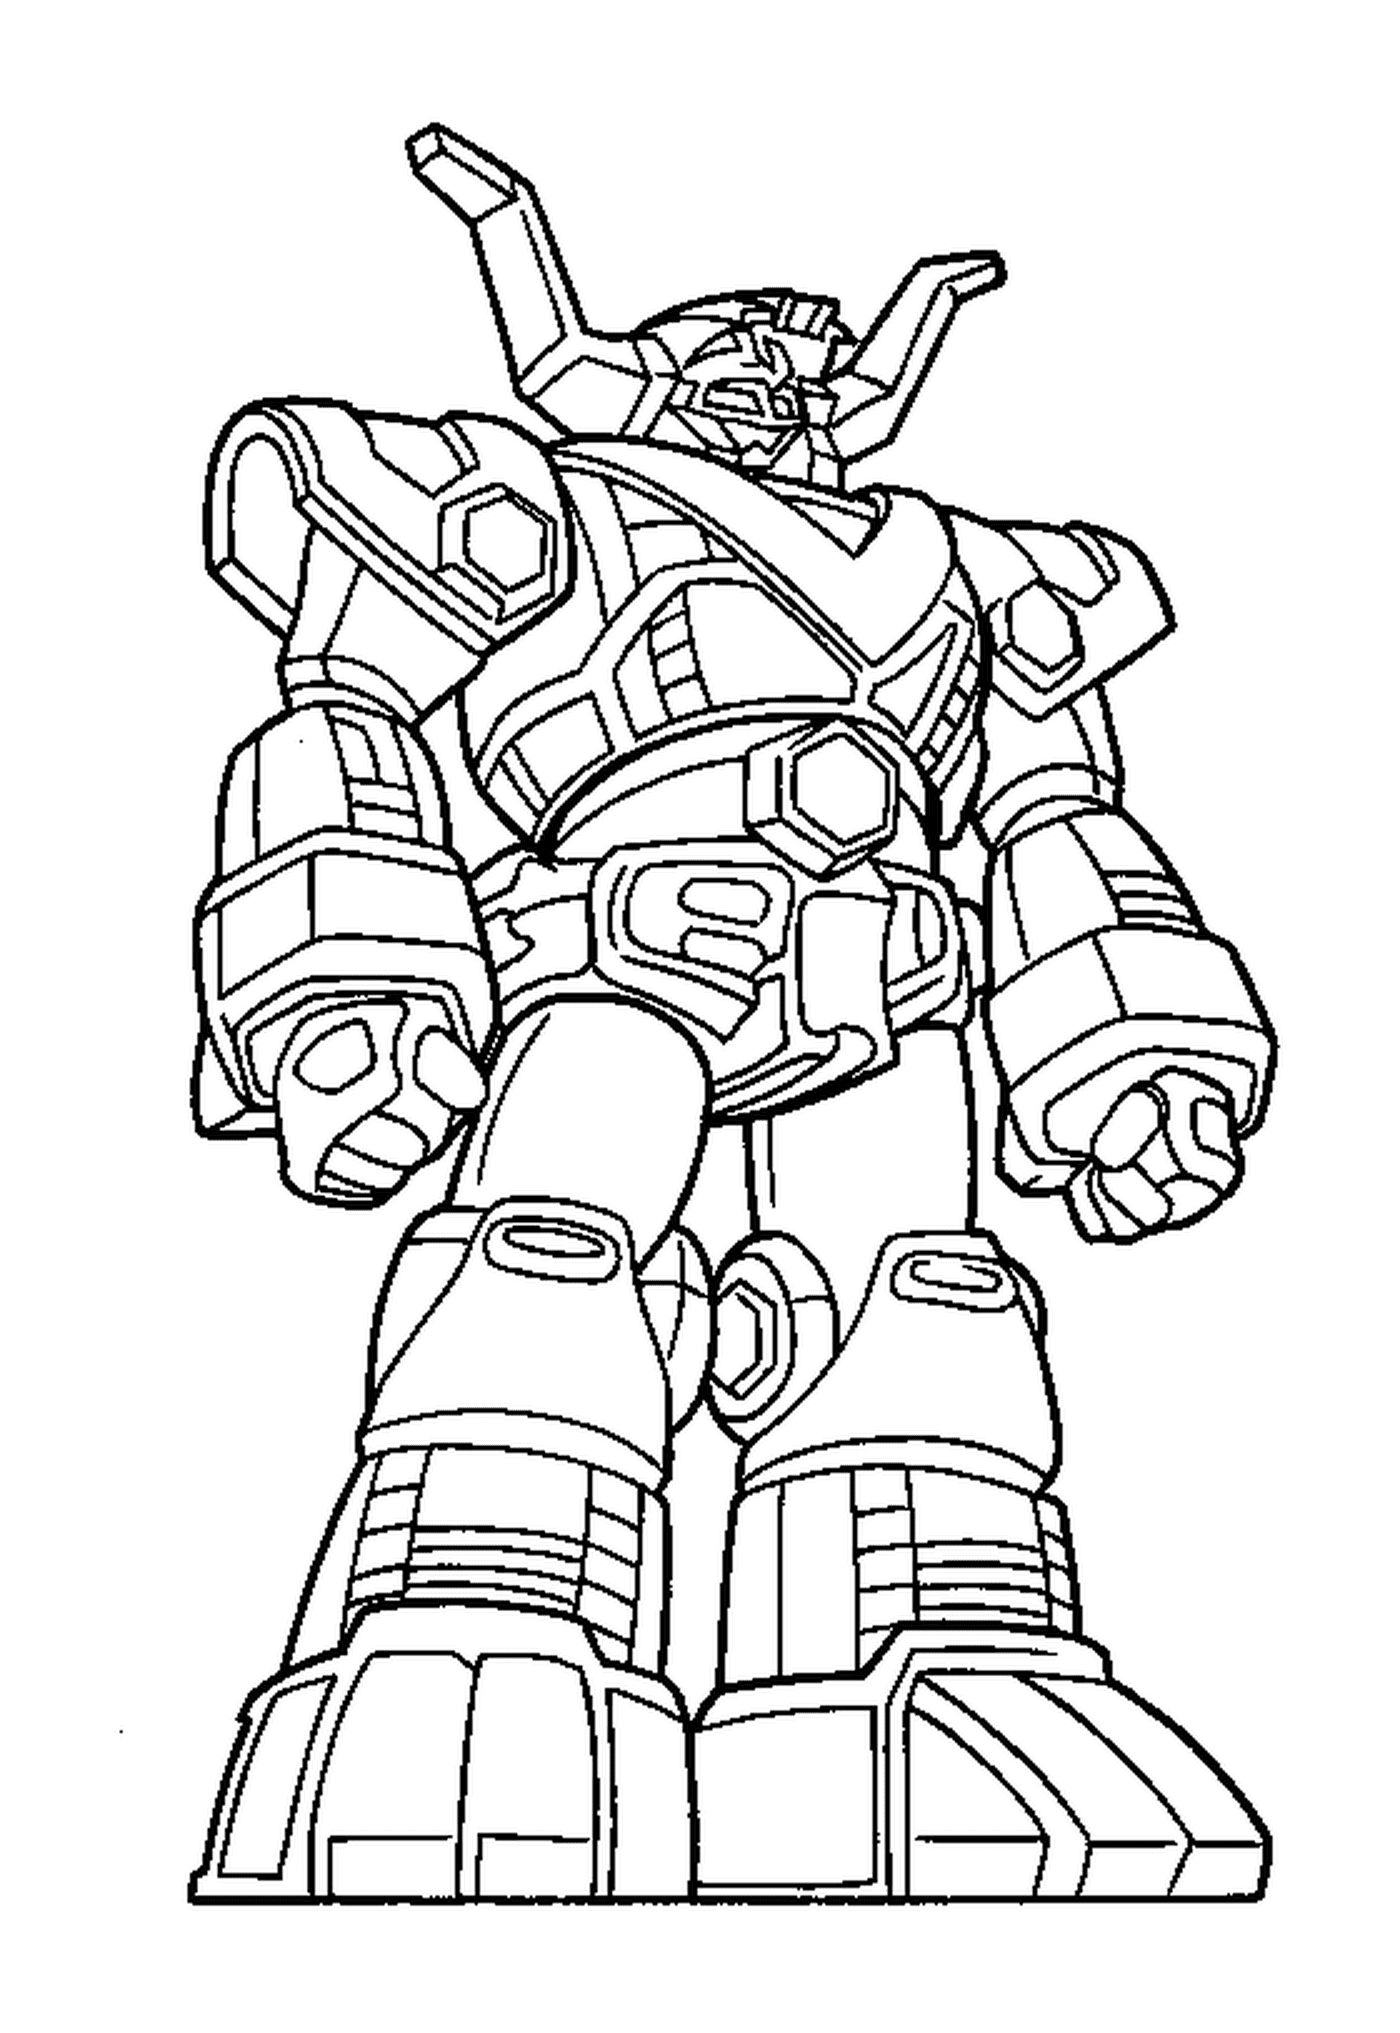  Robot Power Ranger fresco 